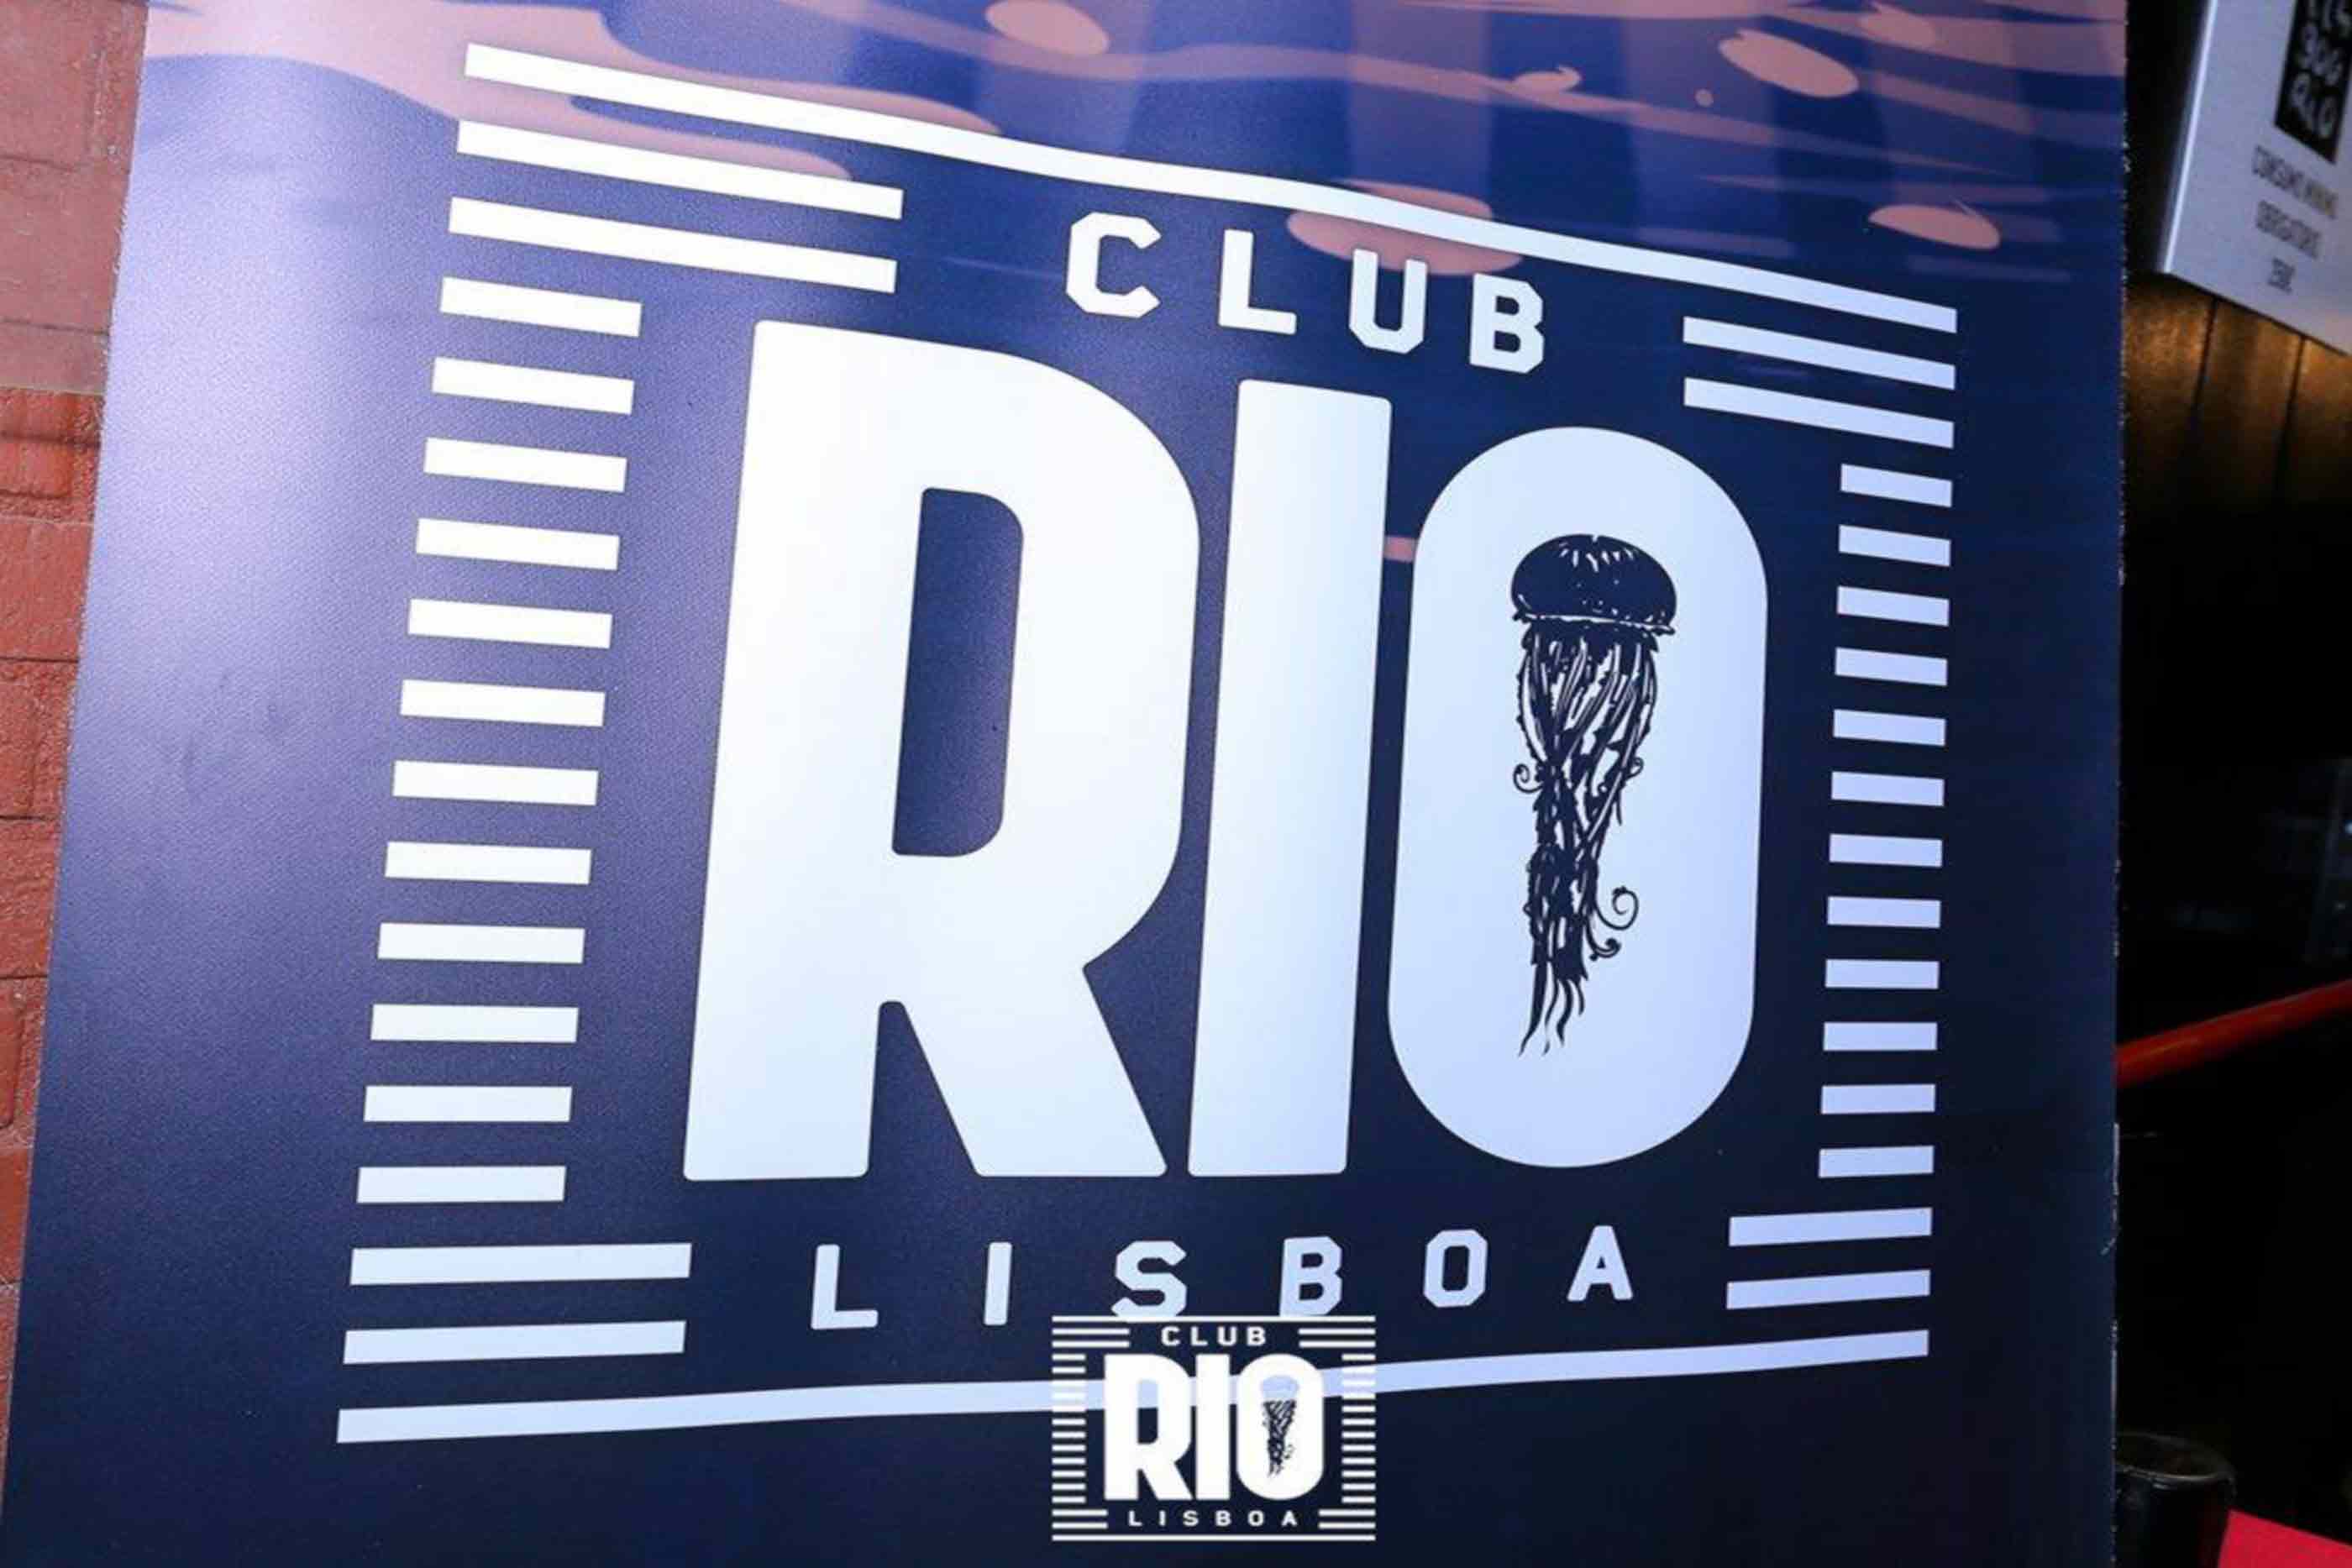 Logotipo do Club Rio Lisboa que se encontra em cartaz dentro do espaço.